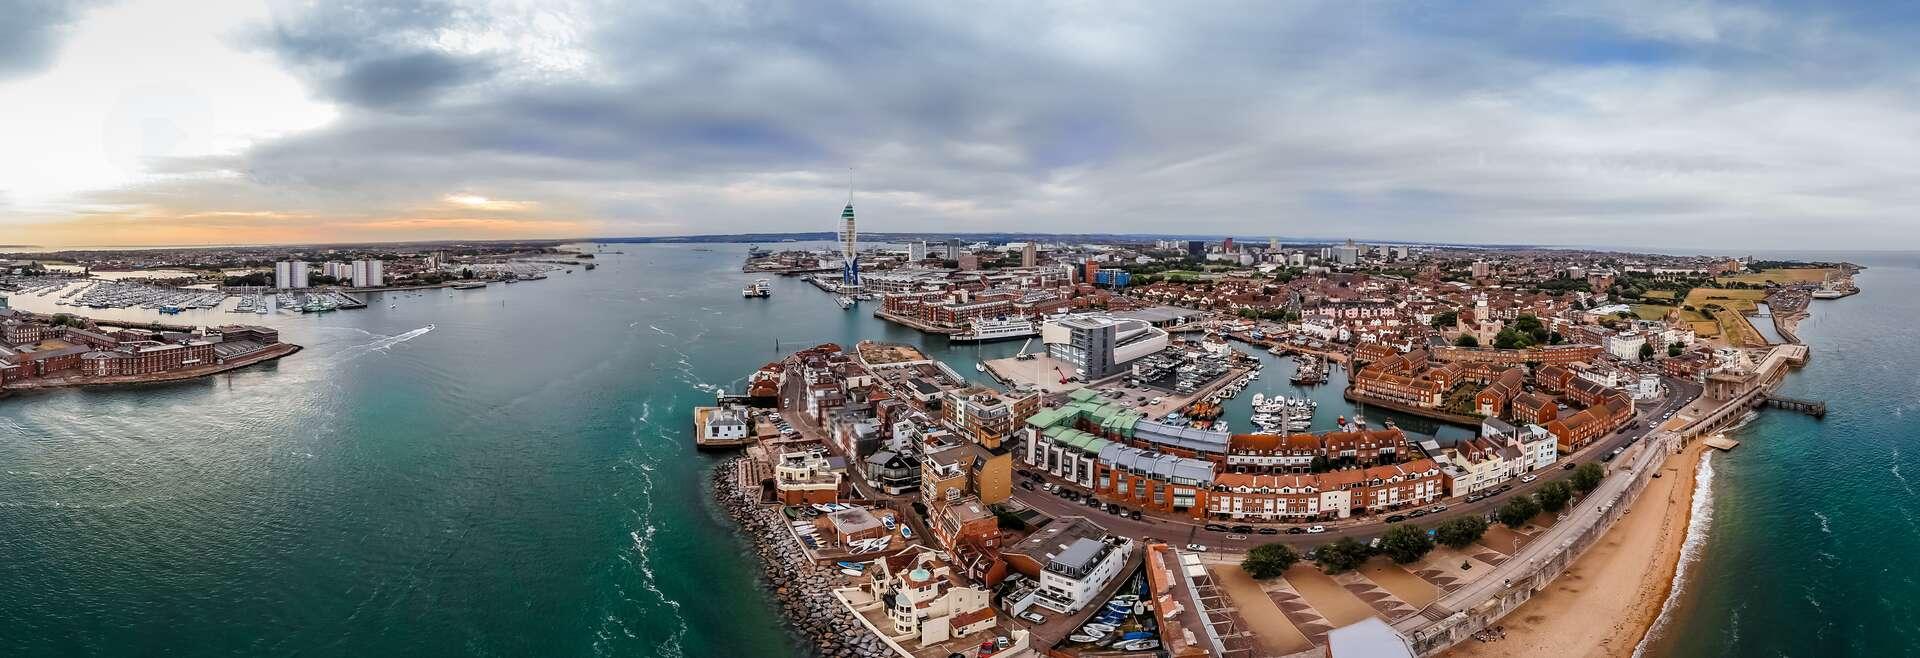 Séjour linguistique Angleterre - Portsmouth